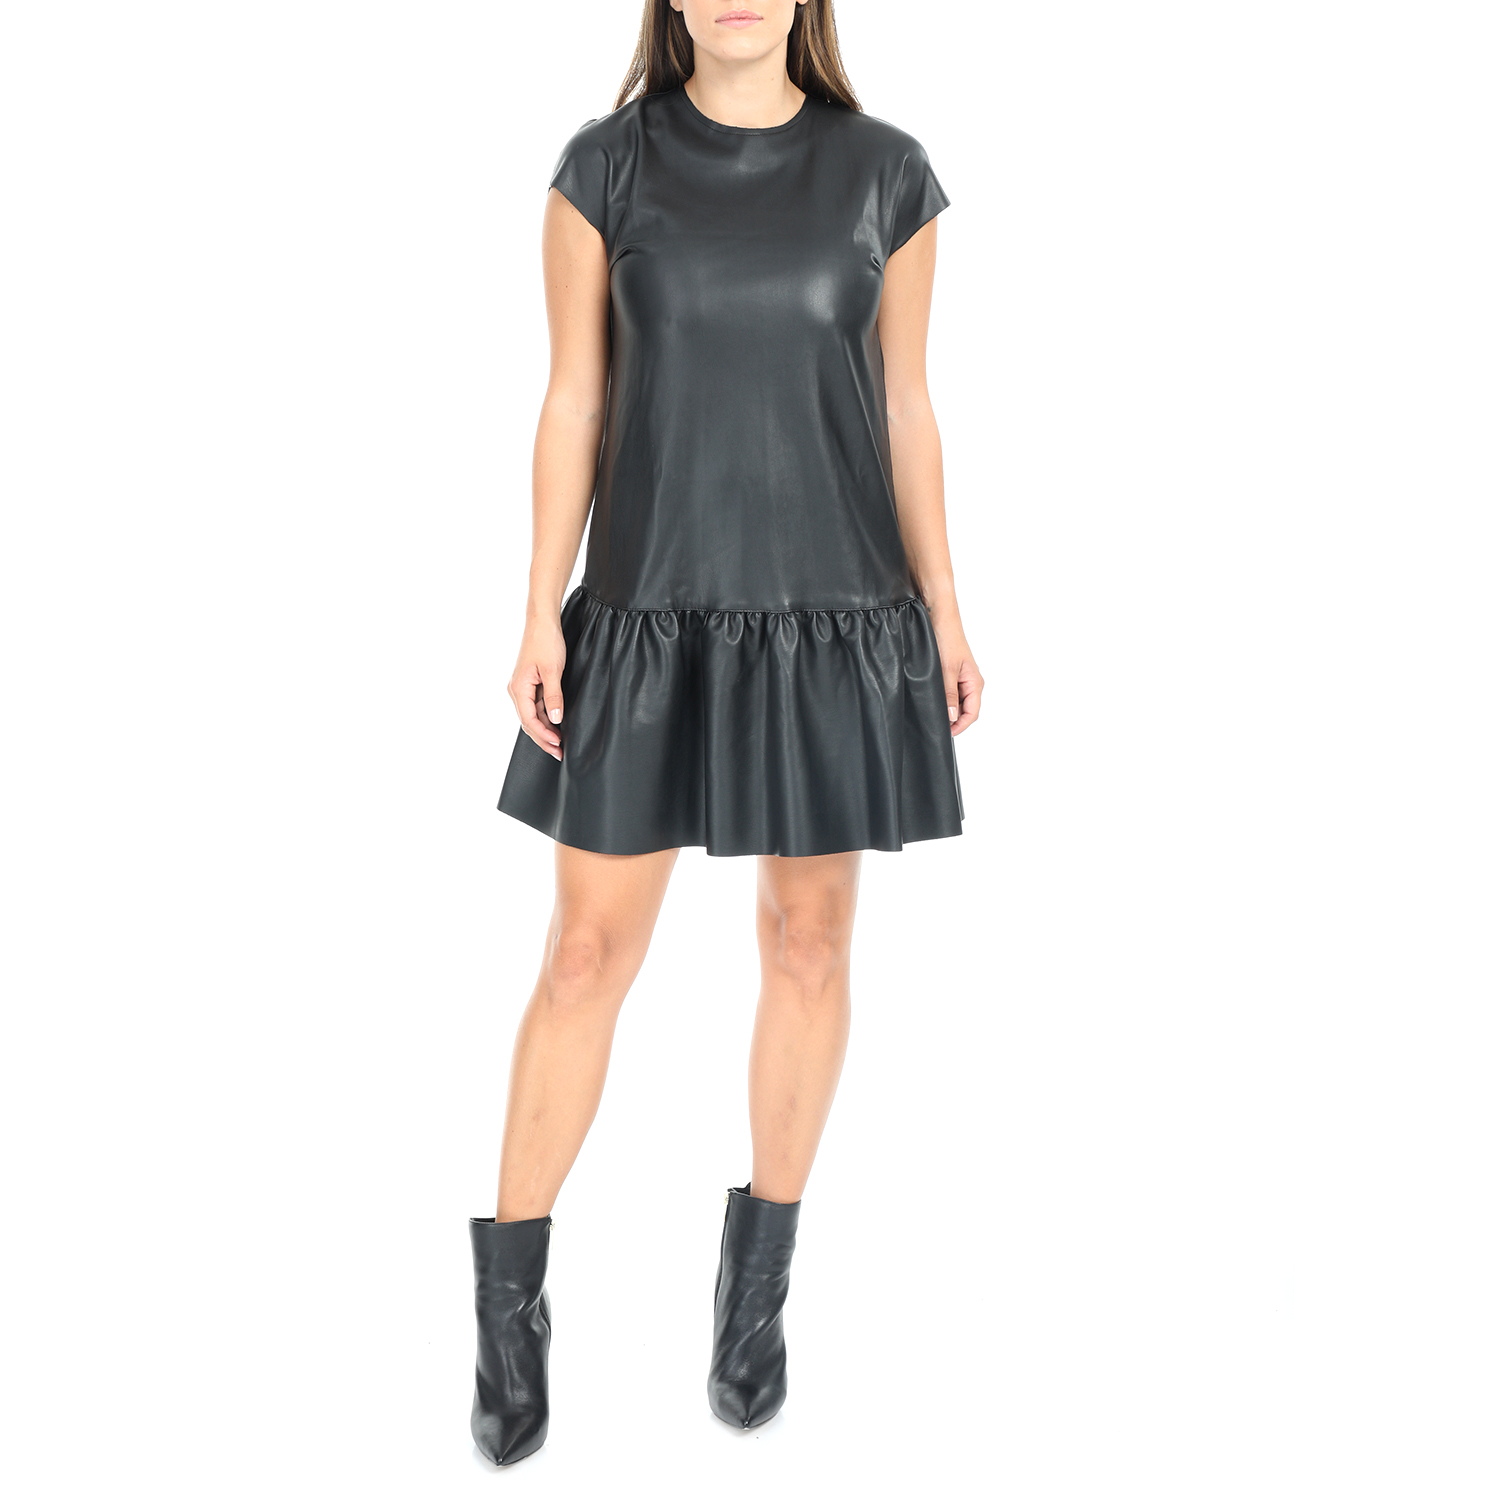 Γυναικεία/Ρούχα/Φορέματα/Μίνι IMPERIAL - Γυναικείο mini φόρεμα IMPERIAL μαύρο